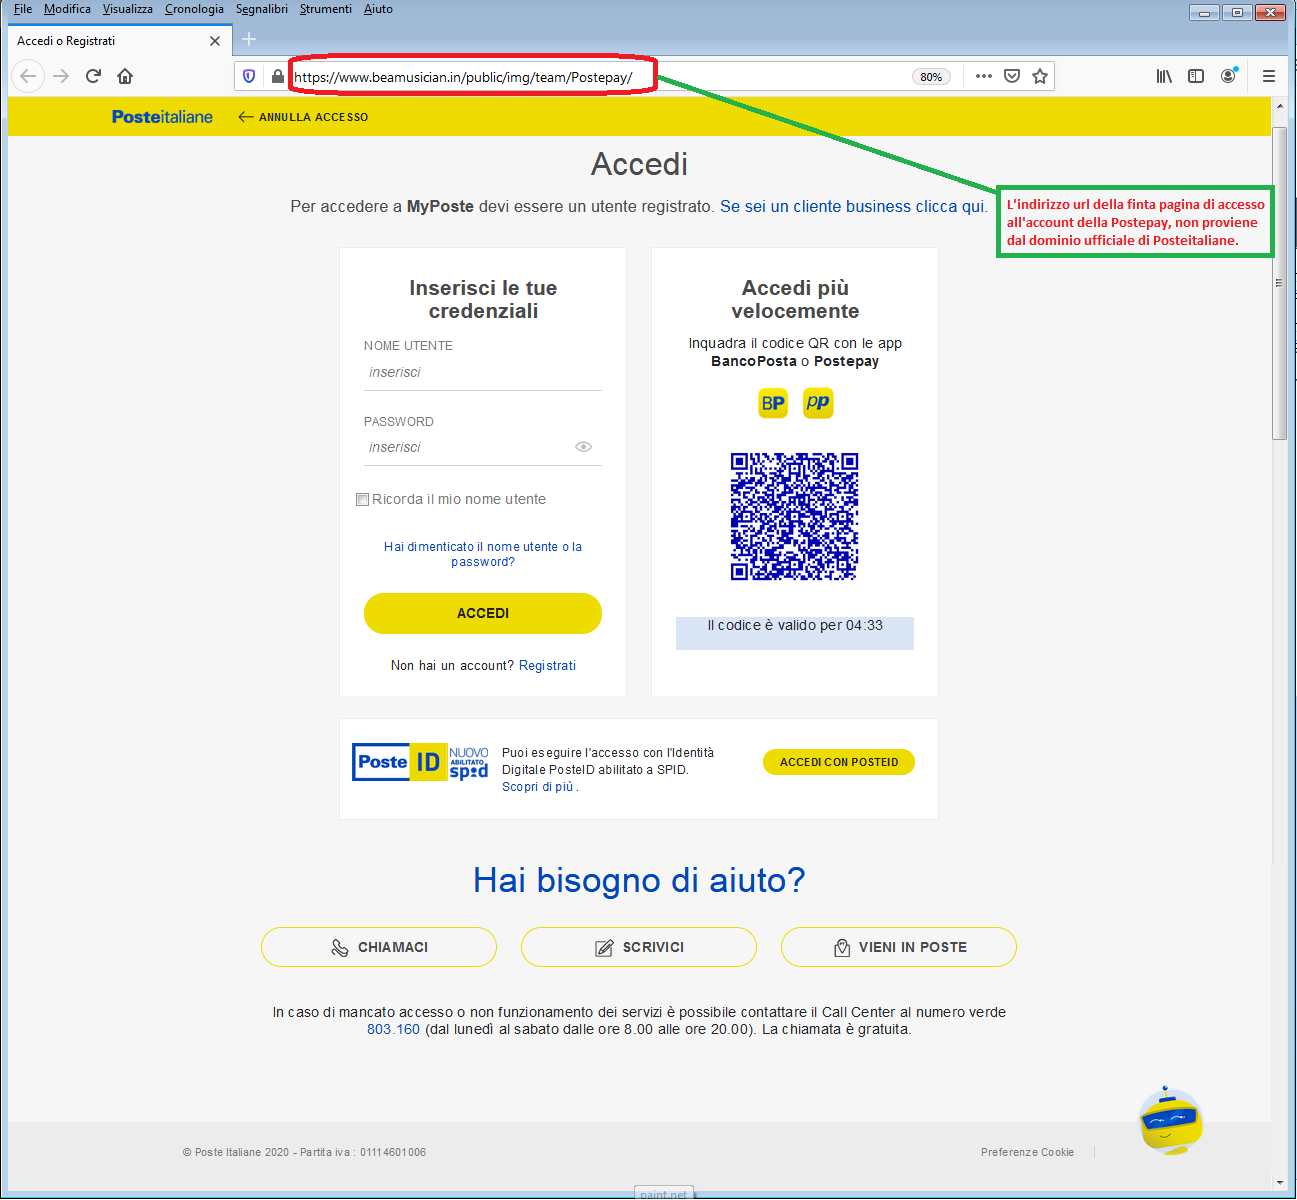 Clicca per ingrandire l'immagine della falsa pagina web di POSTE ITALIANE che cerca di rubare le credenziali di accesso all'account...